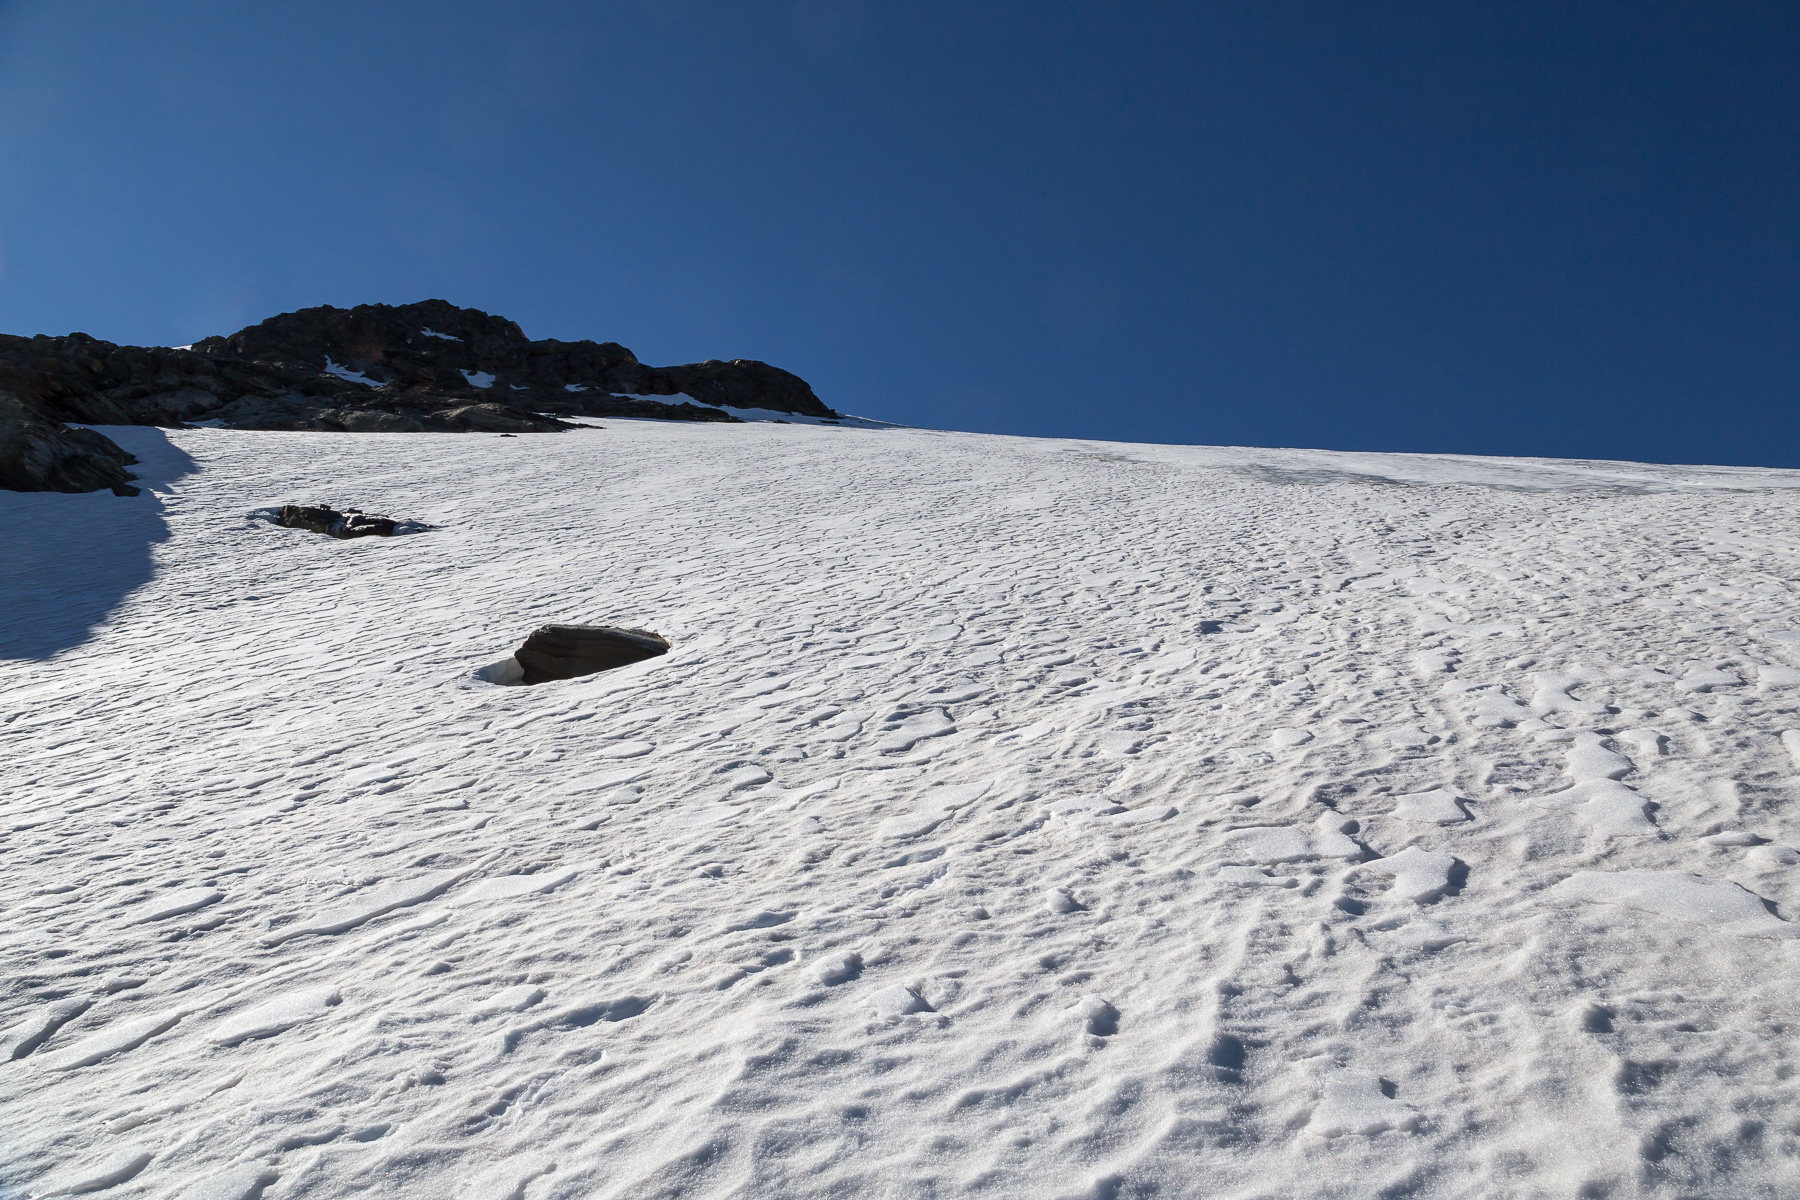 Am Gletscherrand auf 3.200 m: Sehr steil (ca. 40-45°) neigt sich der Gletscher am Einstieg.